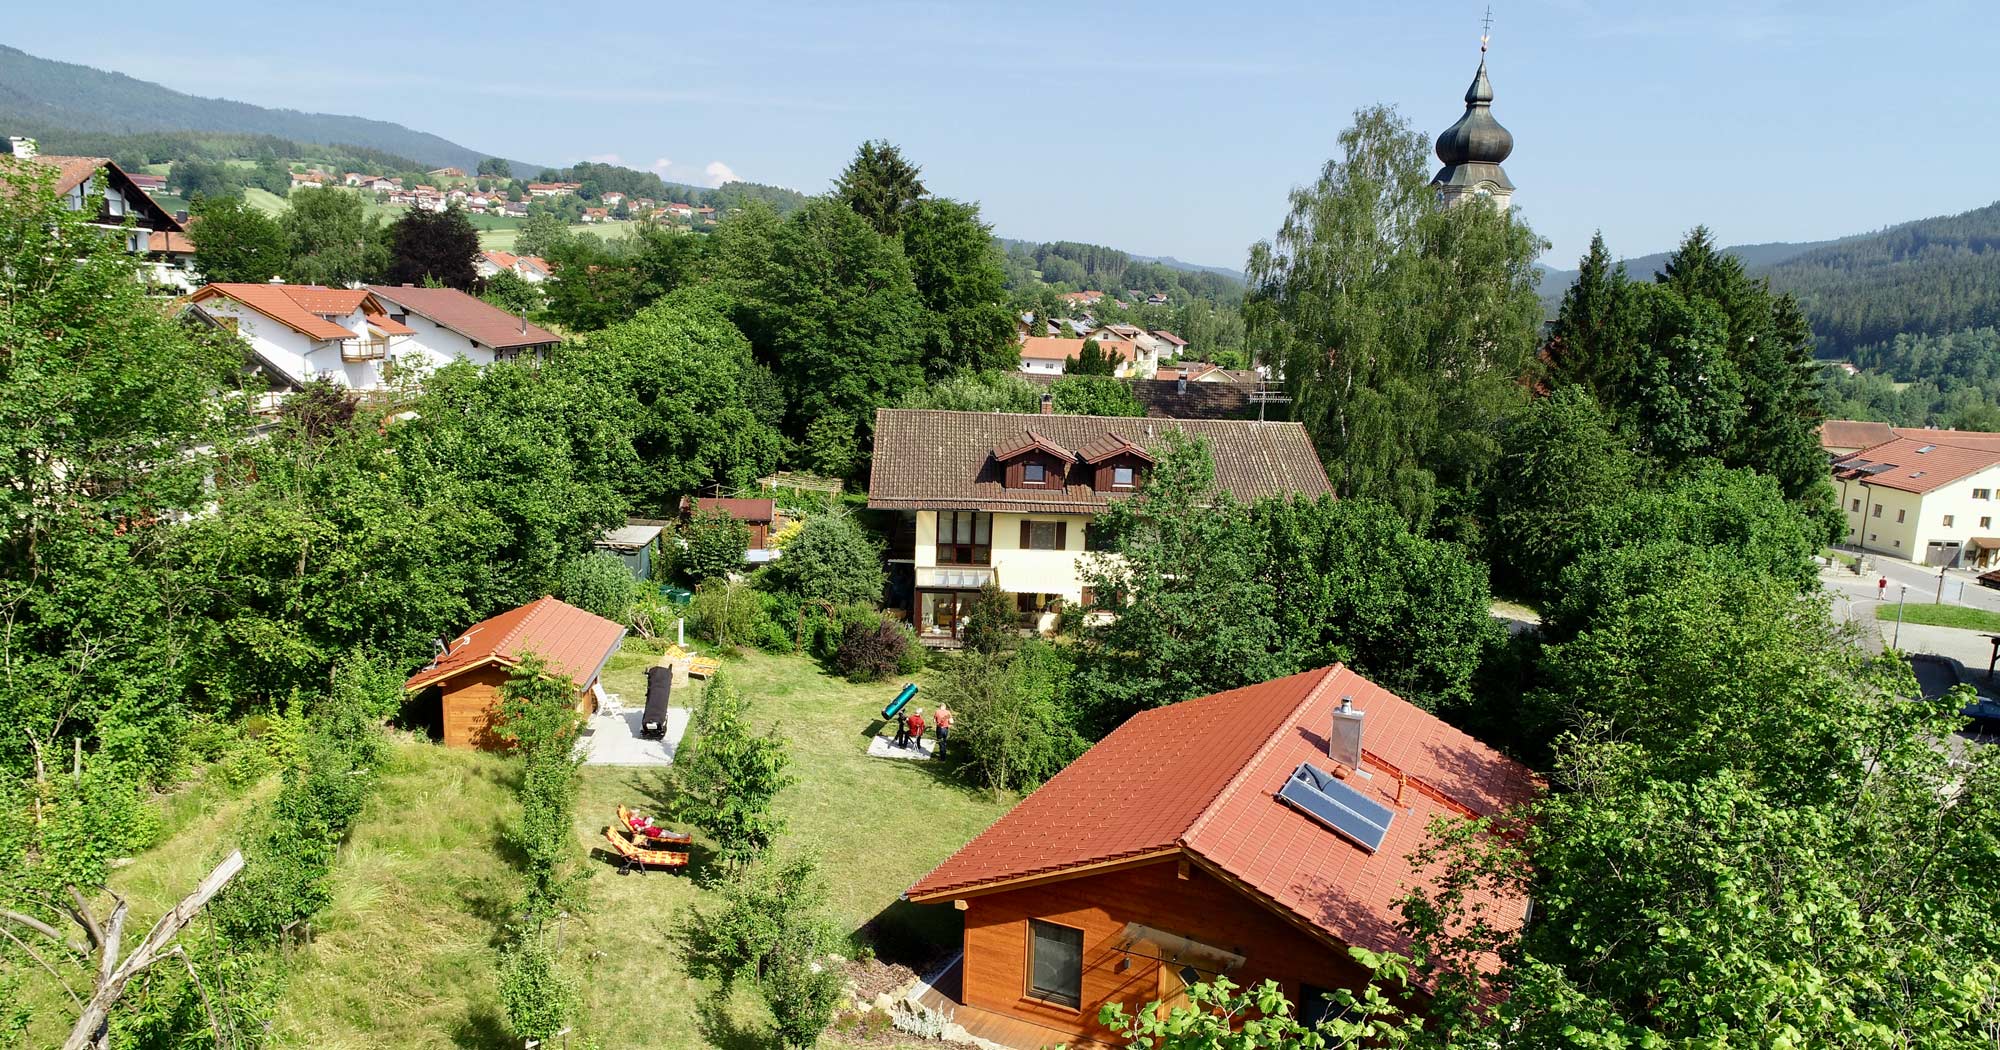 Pension mit Ferienwohnungen in Drachselsried im Bayerischen Wald